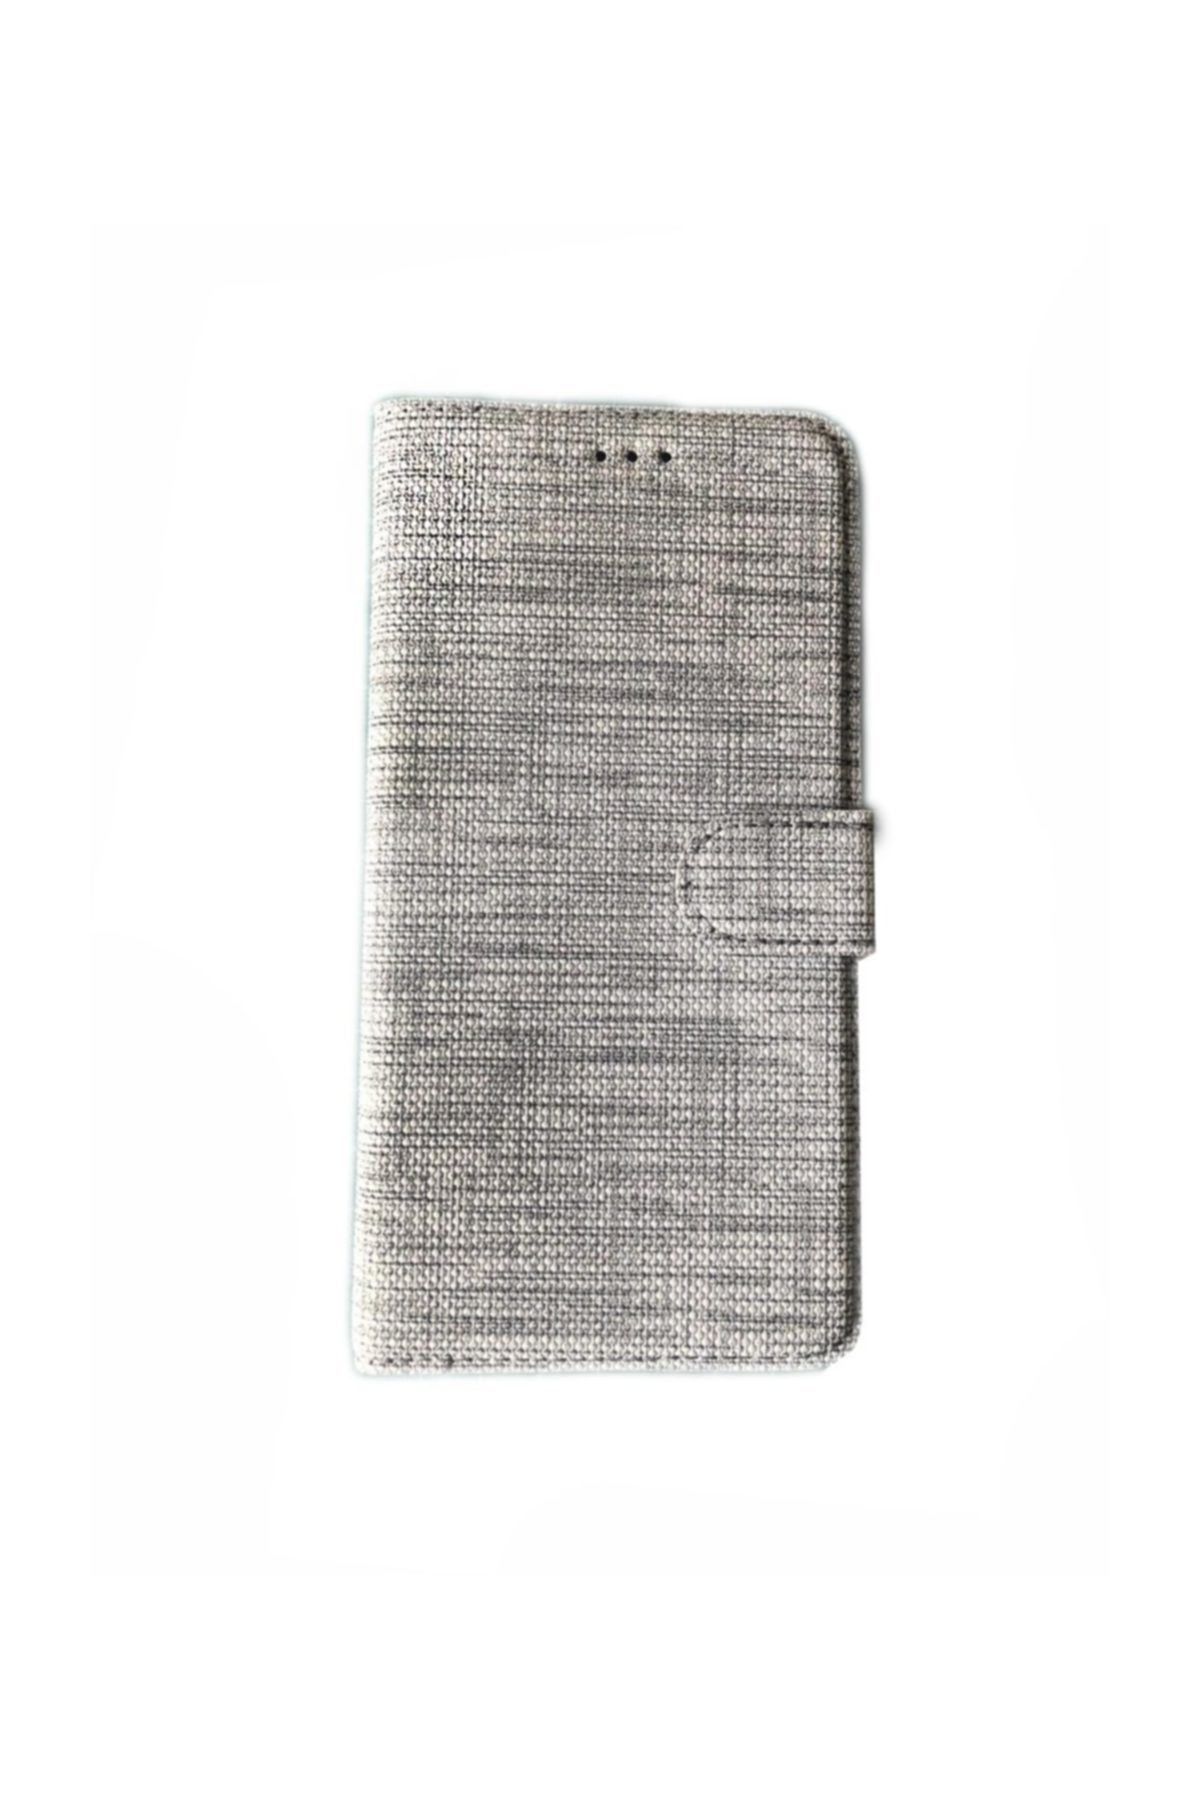 KNY Huawei Mate 20 Lite Kılıf Kumaş Desenli Cüzdanlı Kapaklı Kartlıklı Kılıf+nano Cam Ekran Koruyucu